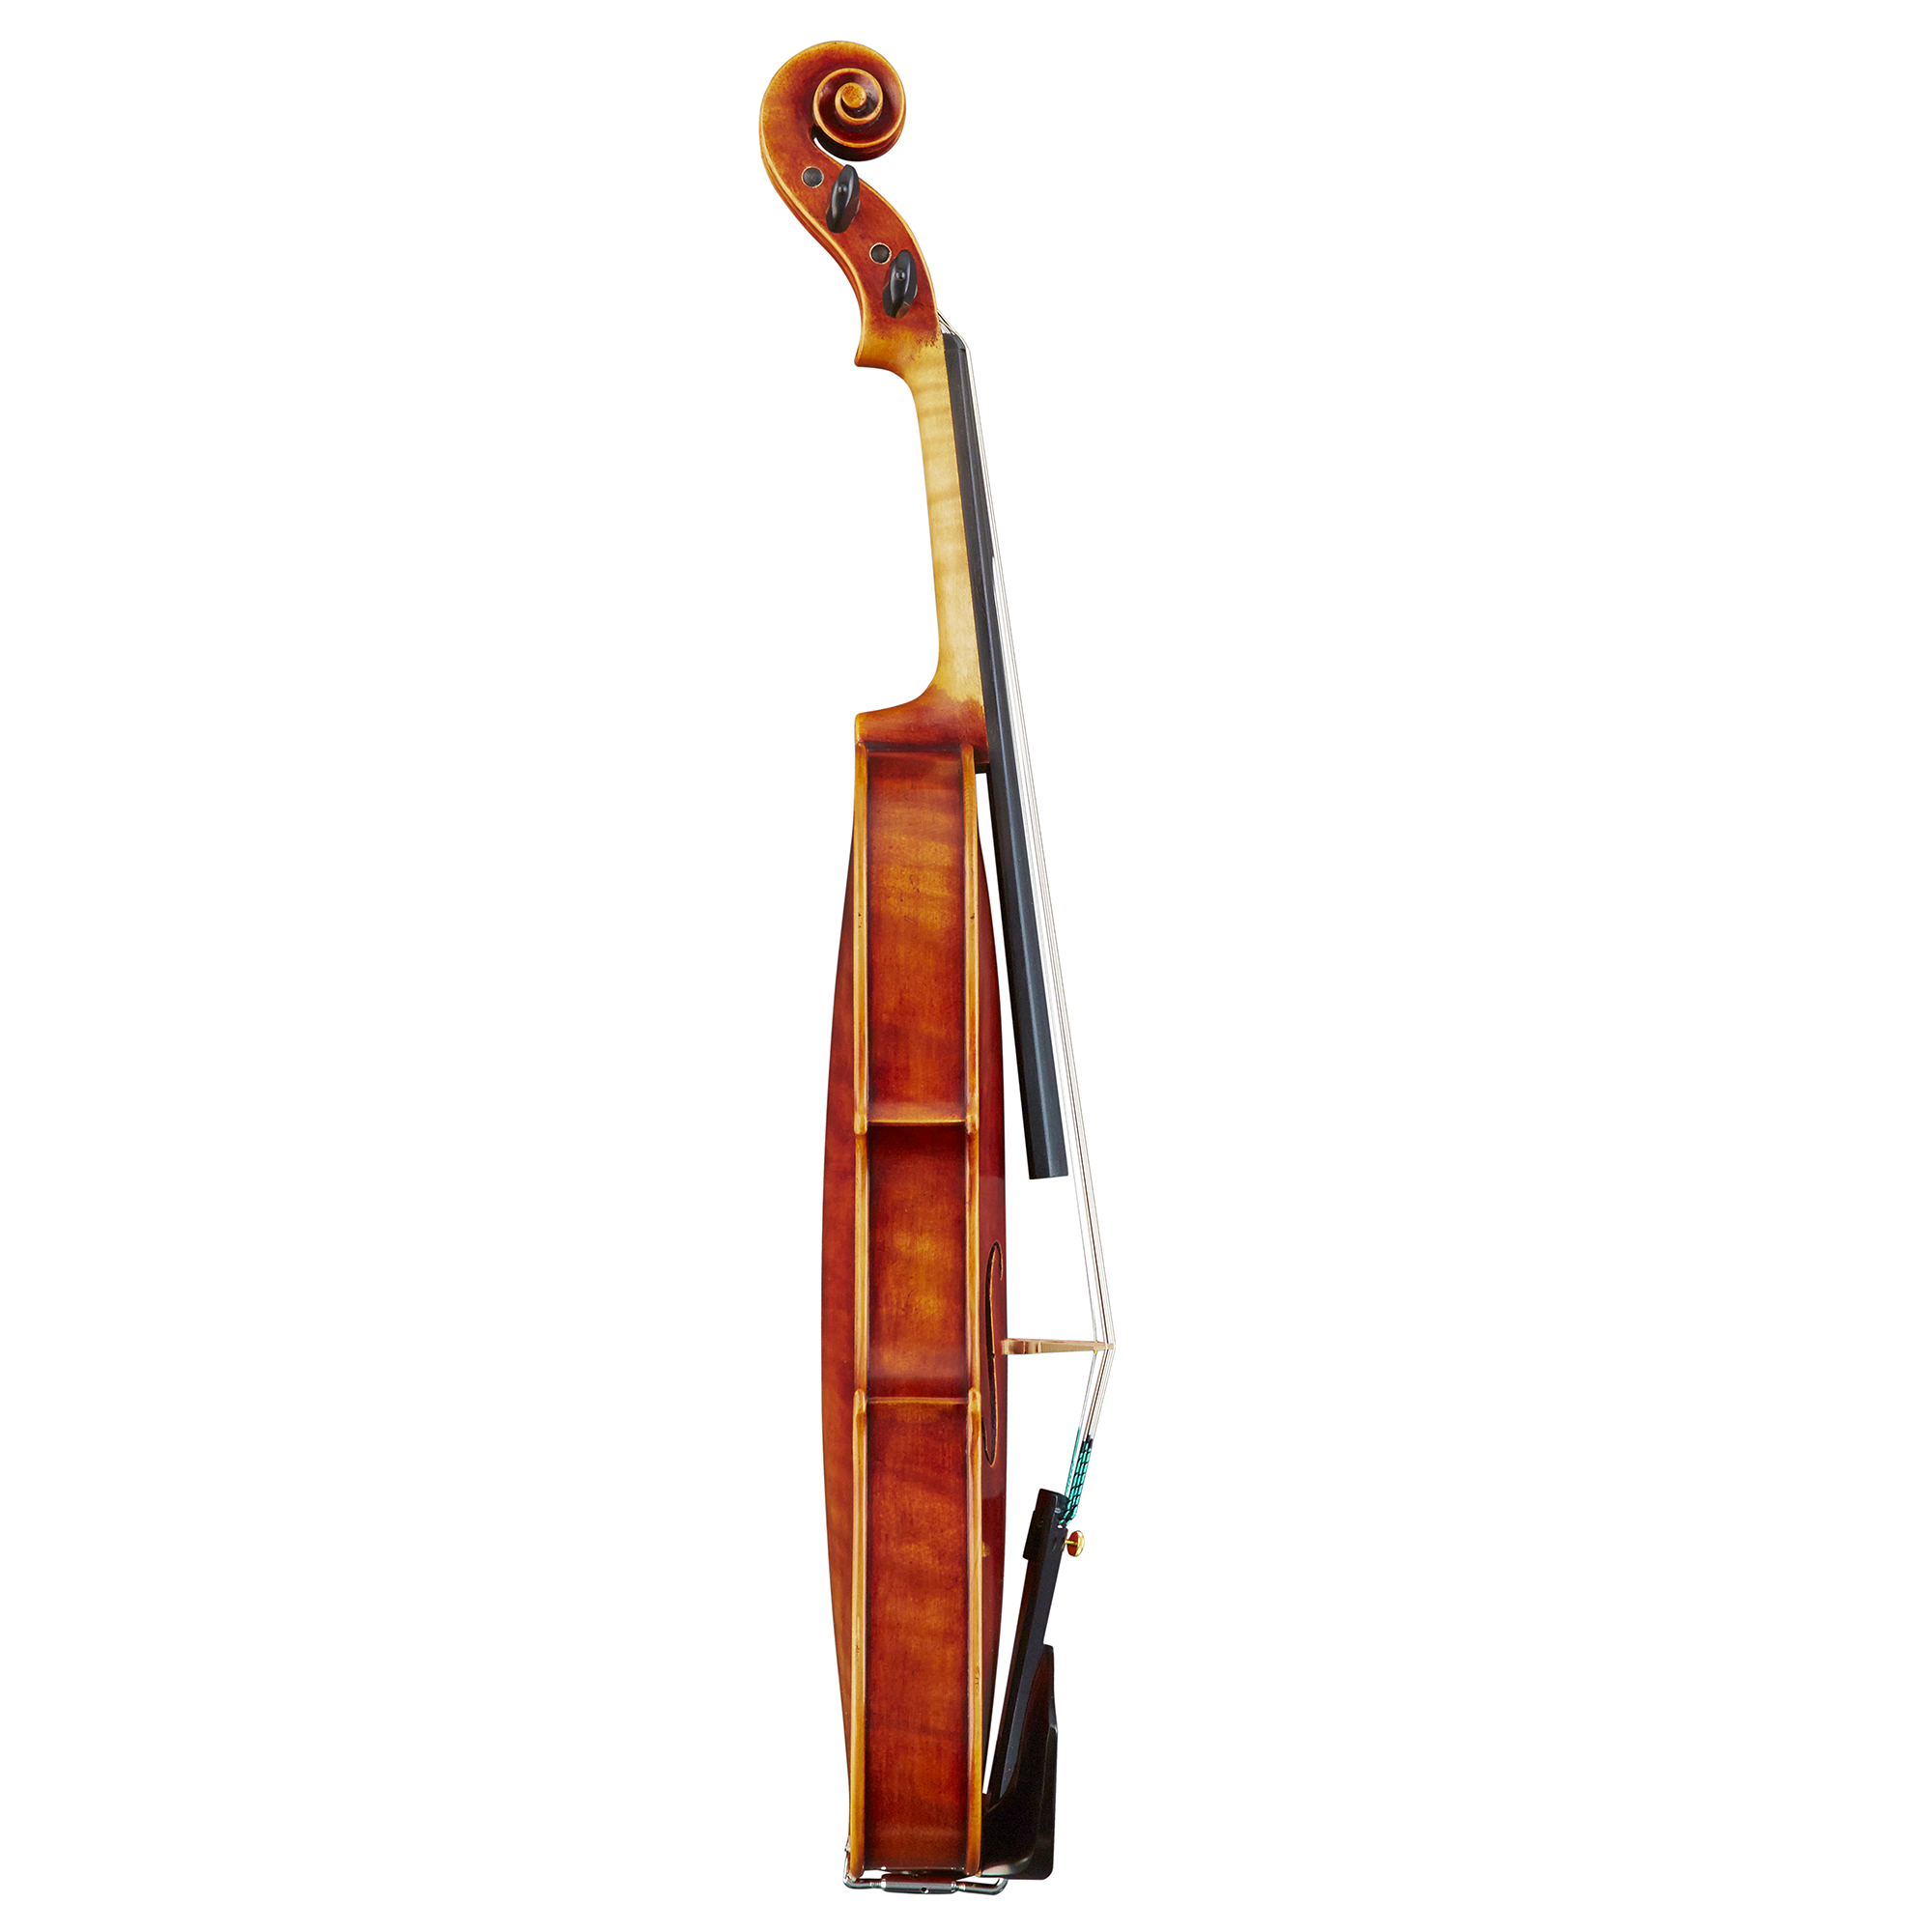 Nicolo Gabrieli 87FD Virtuoso Violin